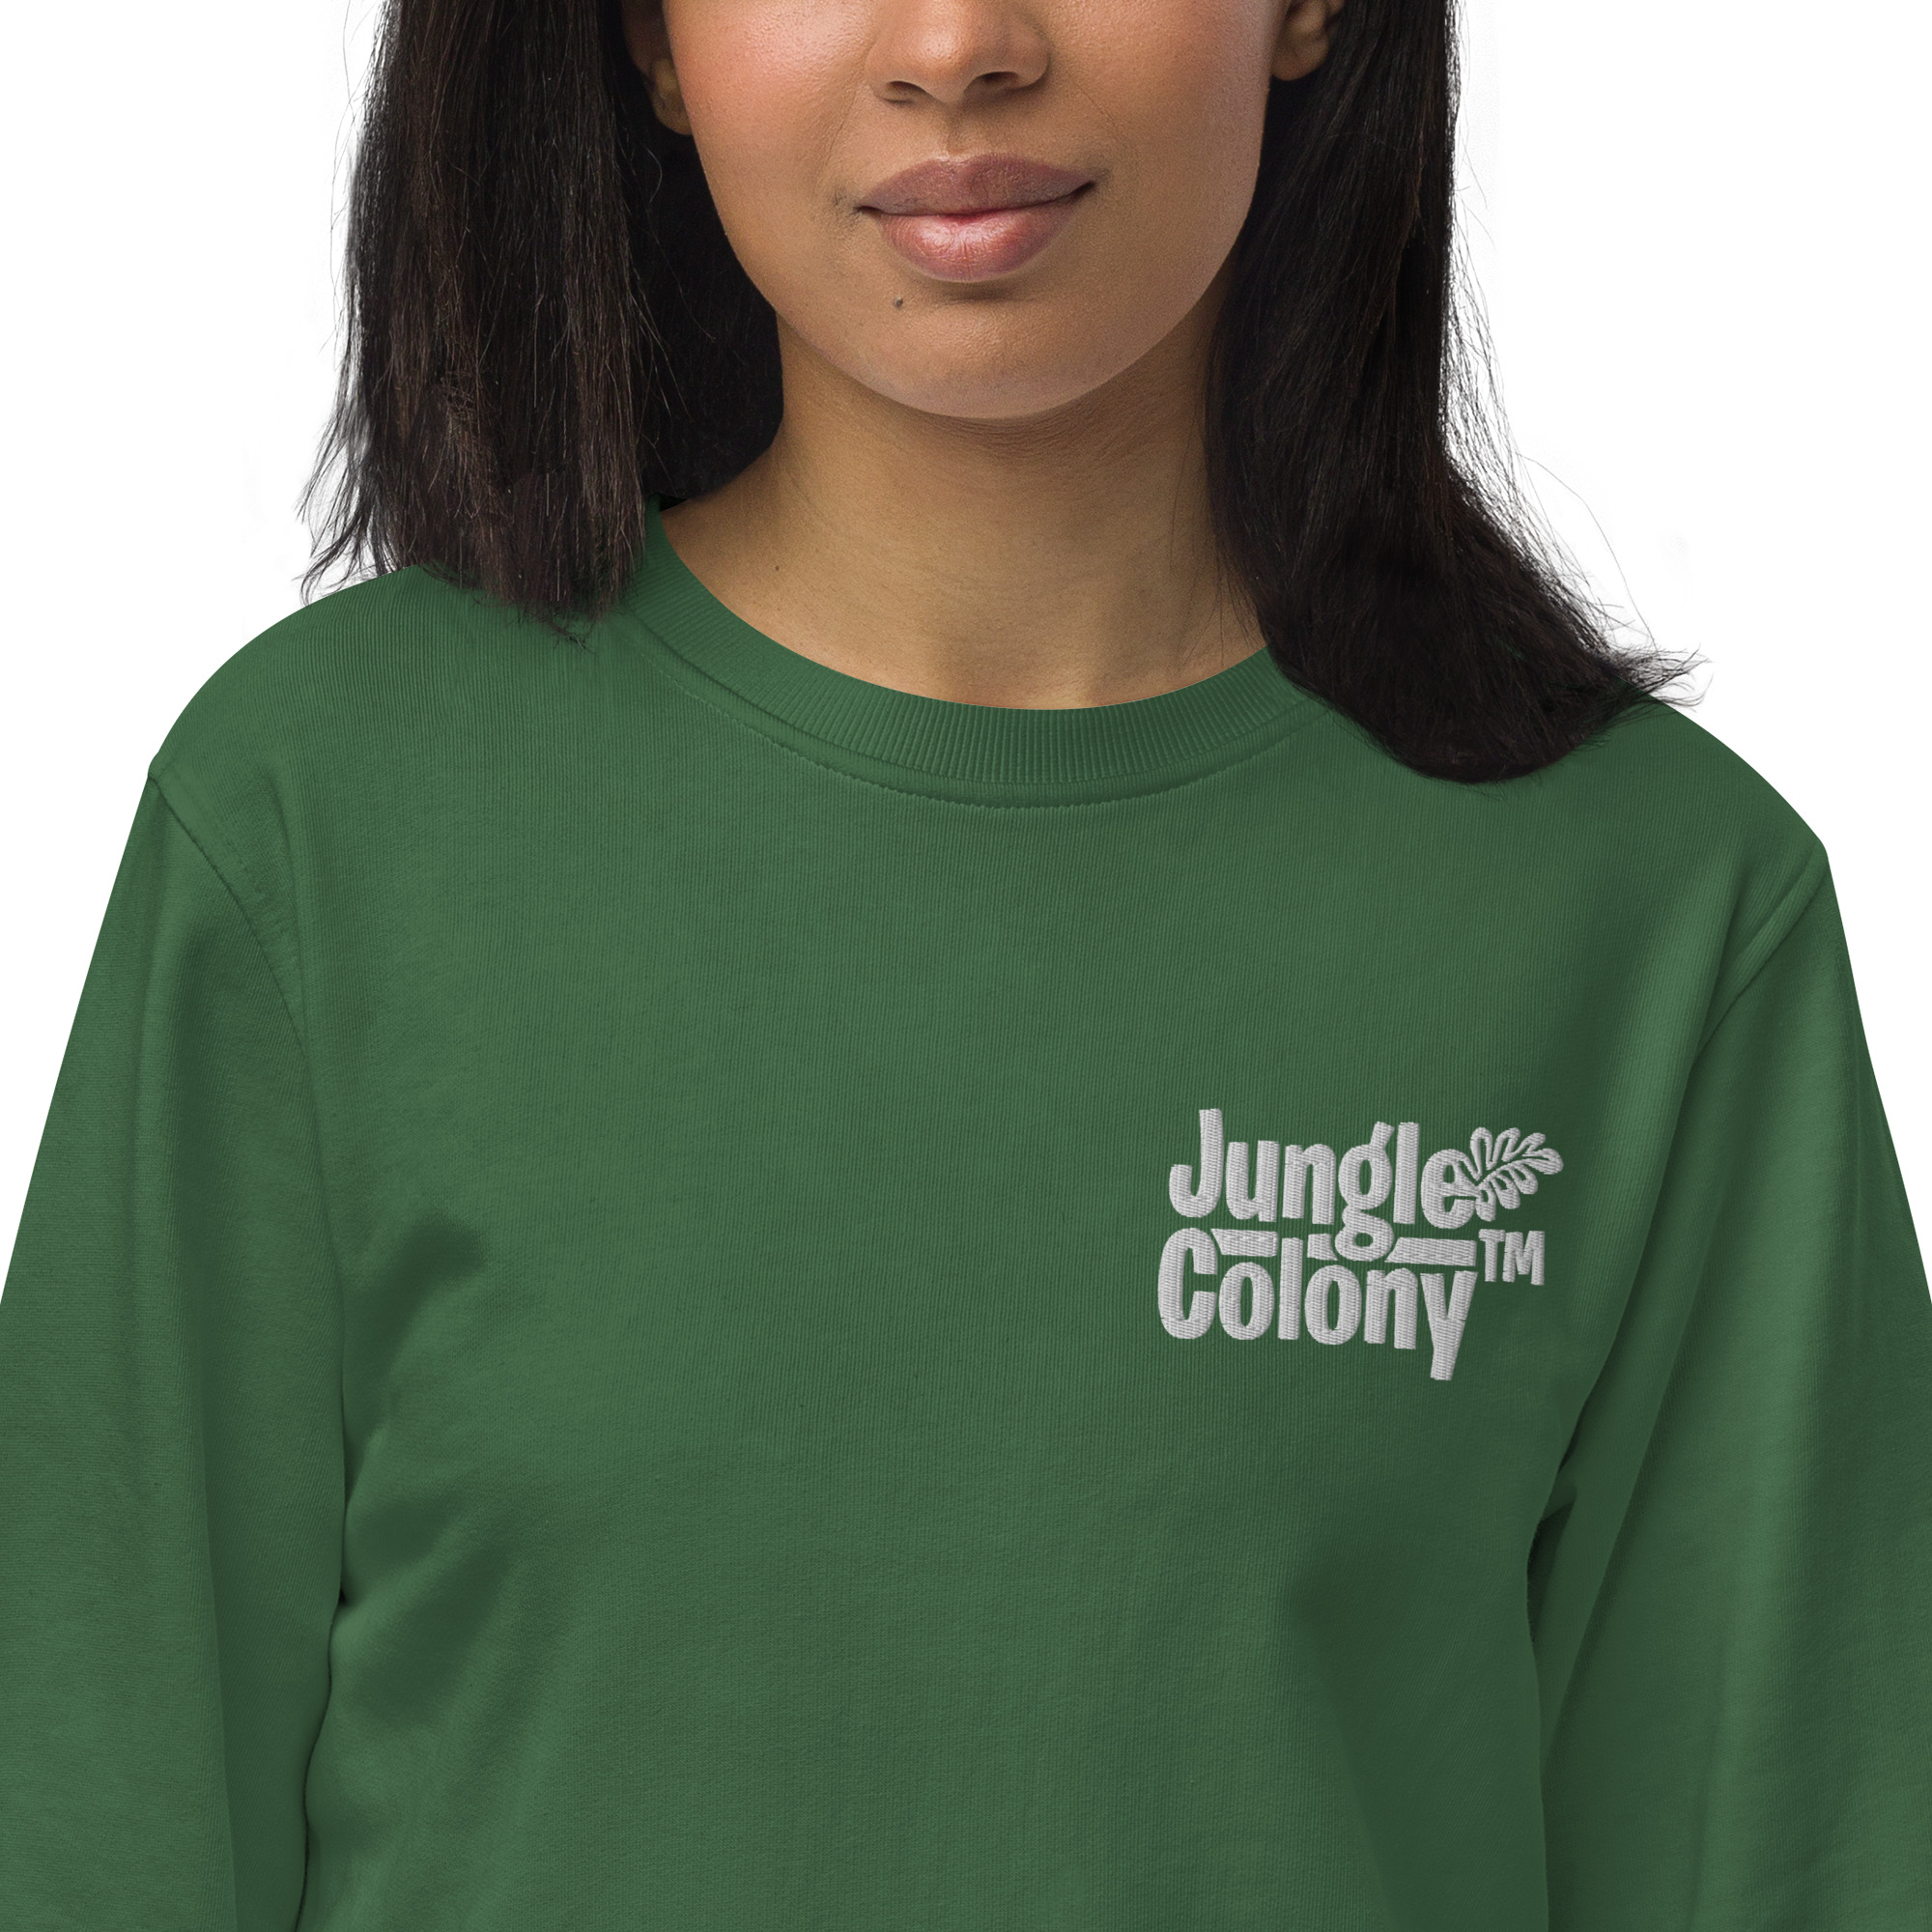 unisex-organic-sweatshirt-bottle-green-zoomed-in-64200a7836ae9.jpg